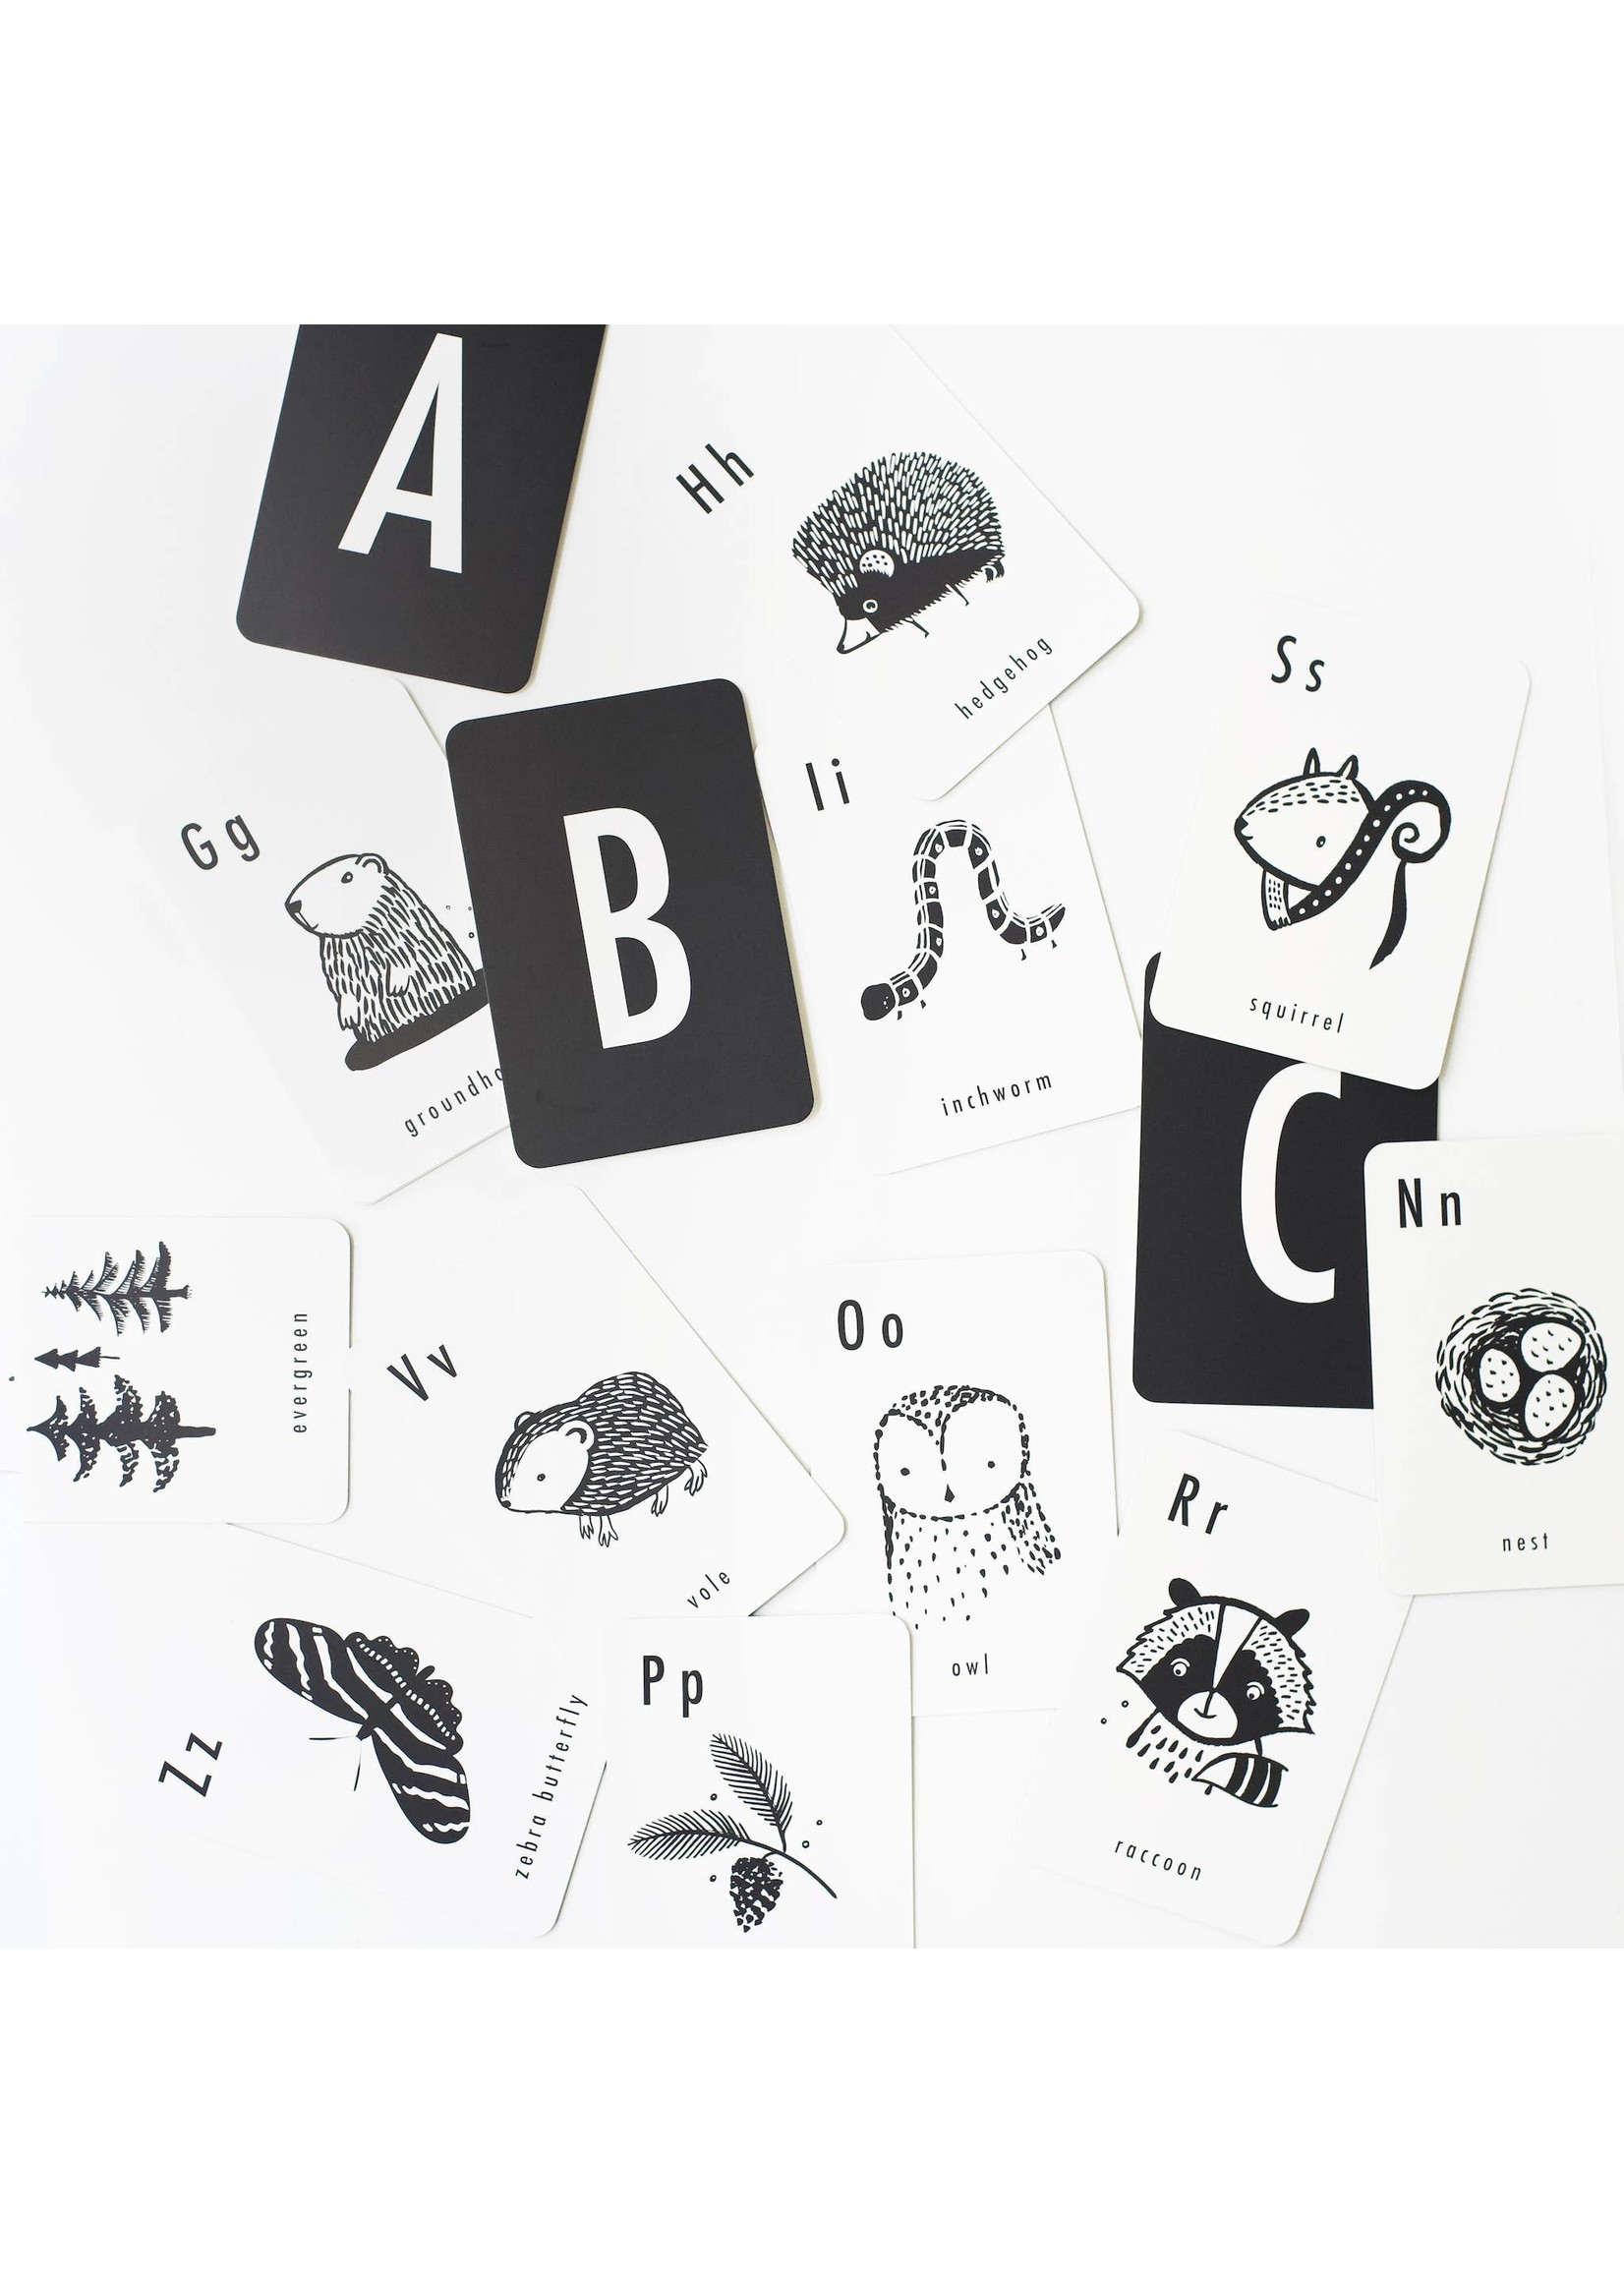 Woodland Alphabet Cards